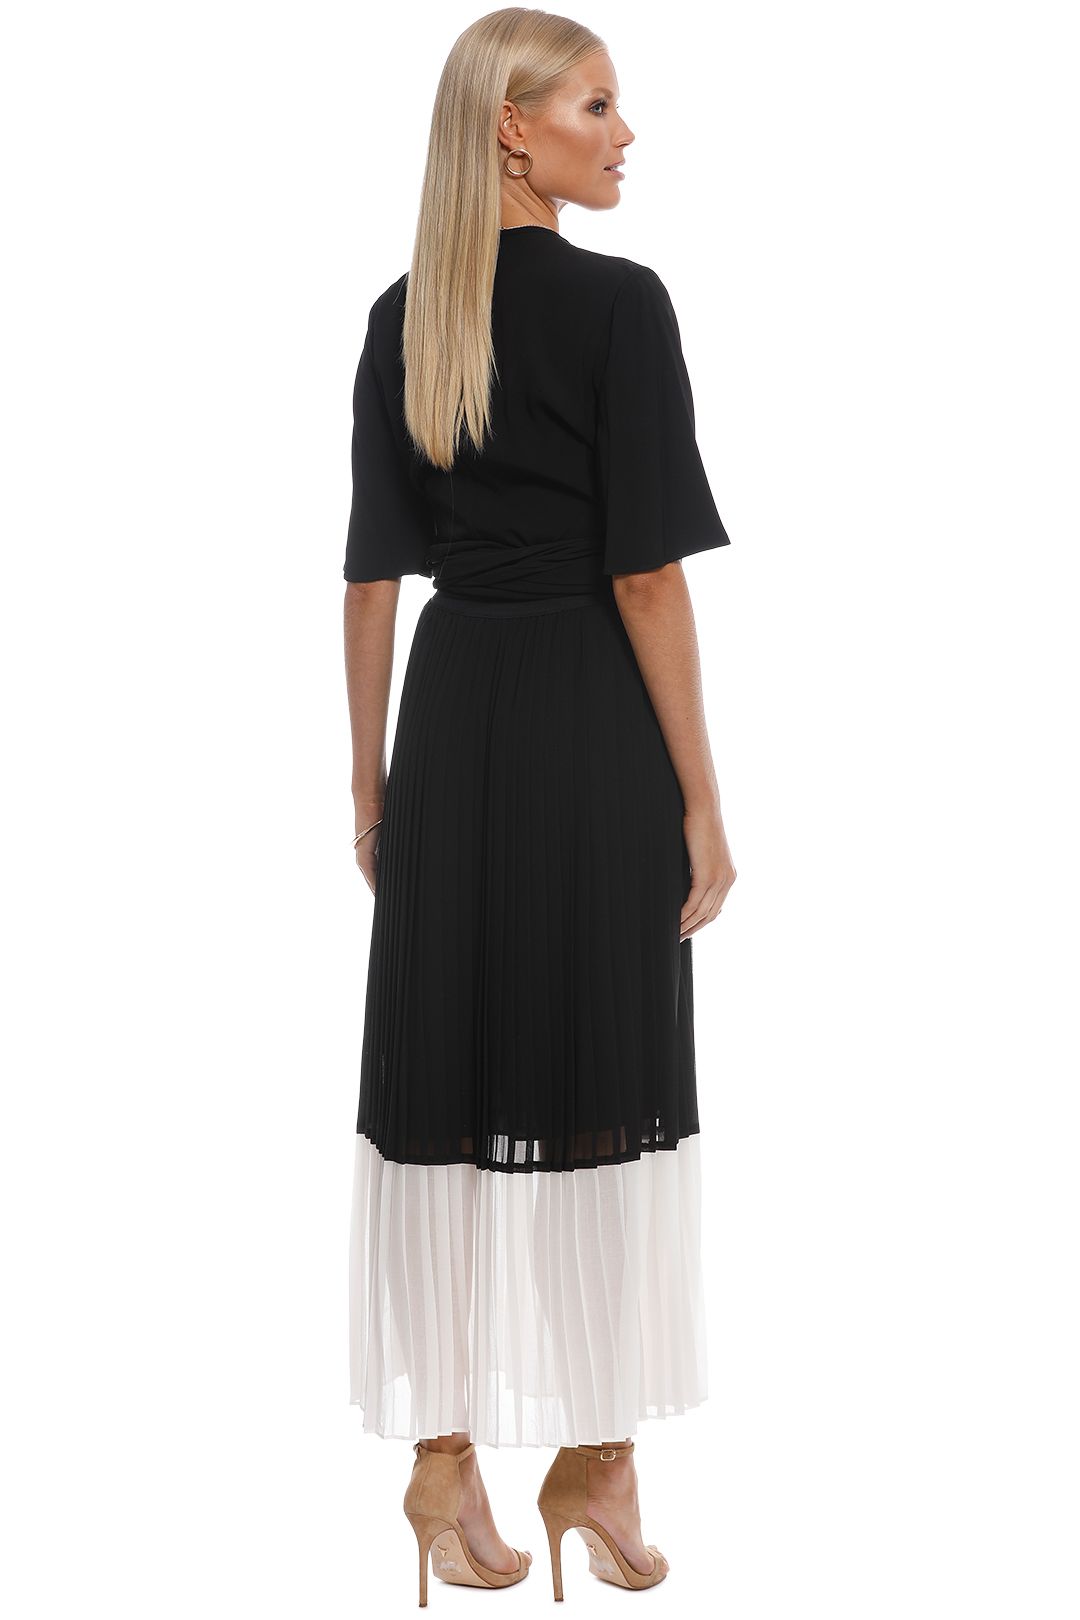 Zimmermann - Splice Pleat Skirt - Black White - Back